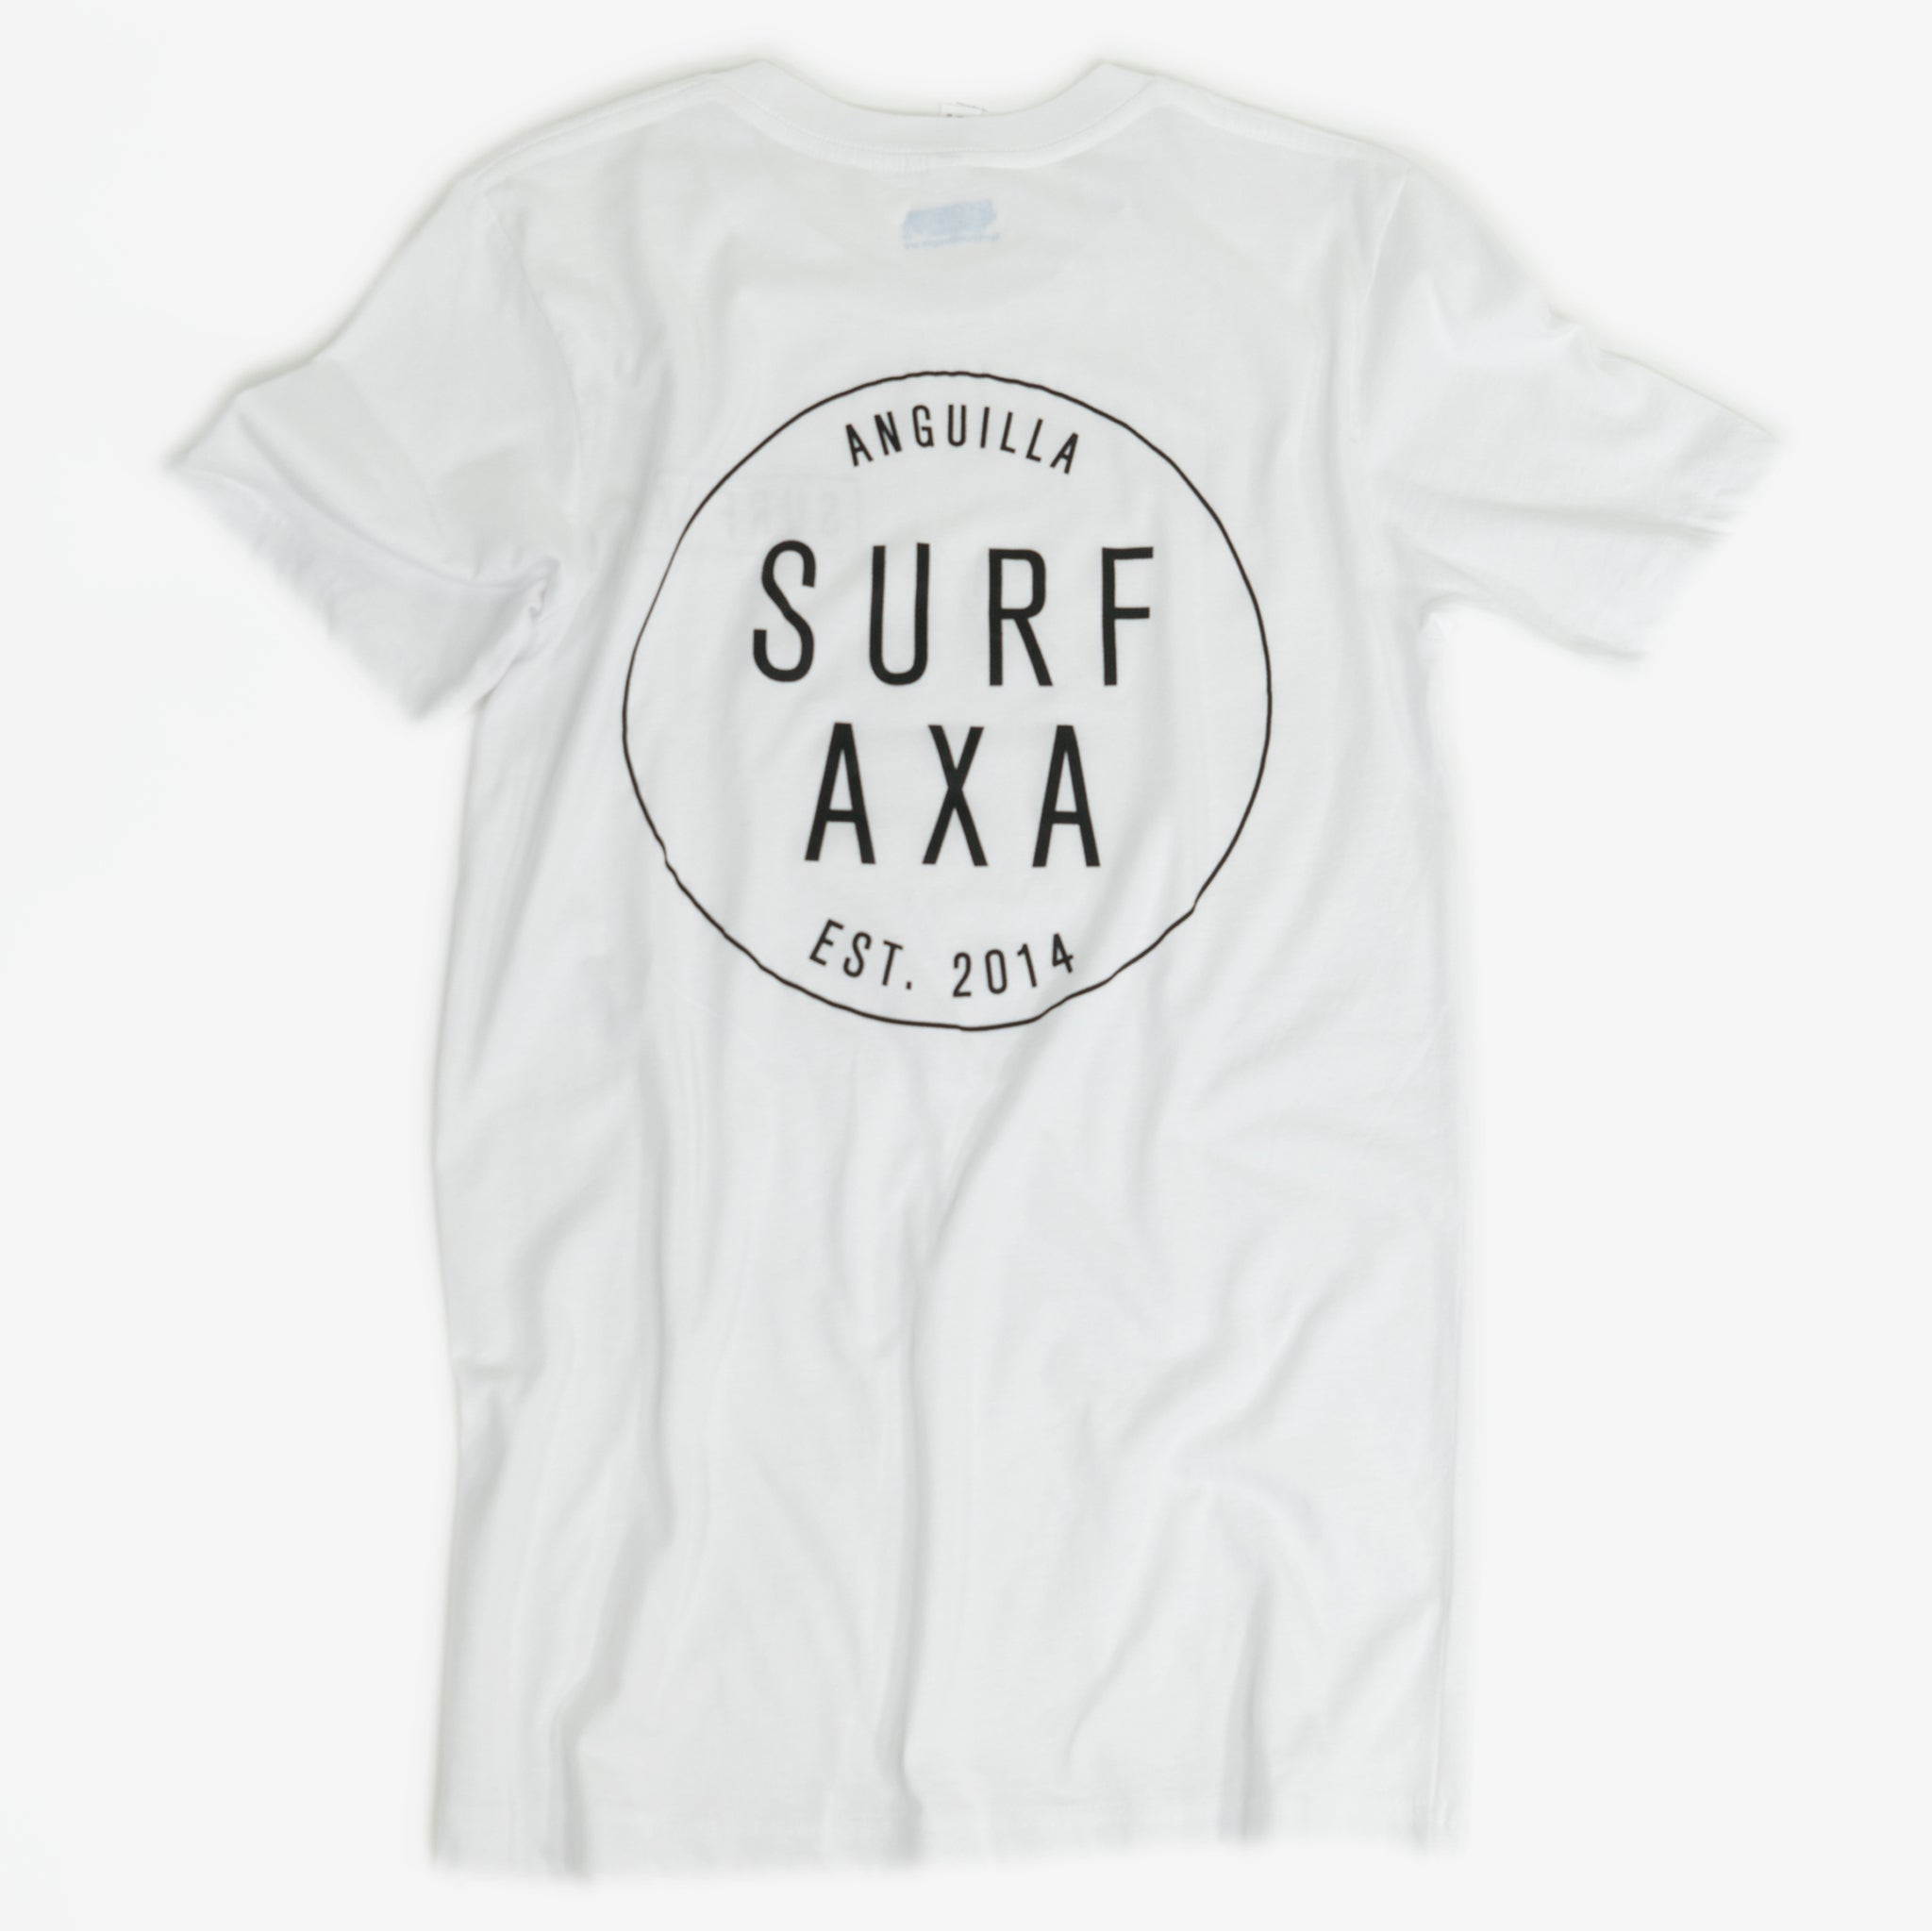 Surf AXA T-shirt